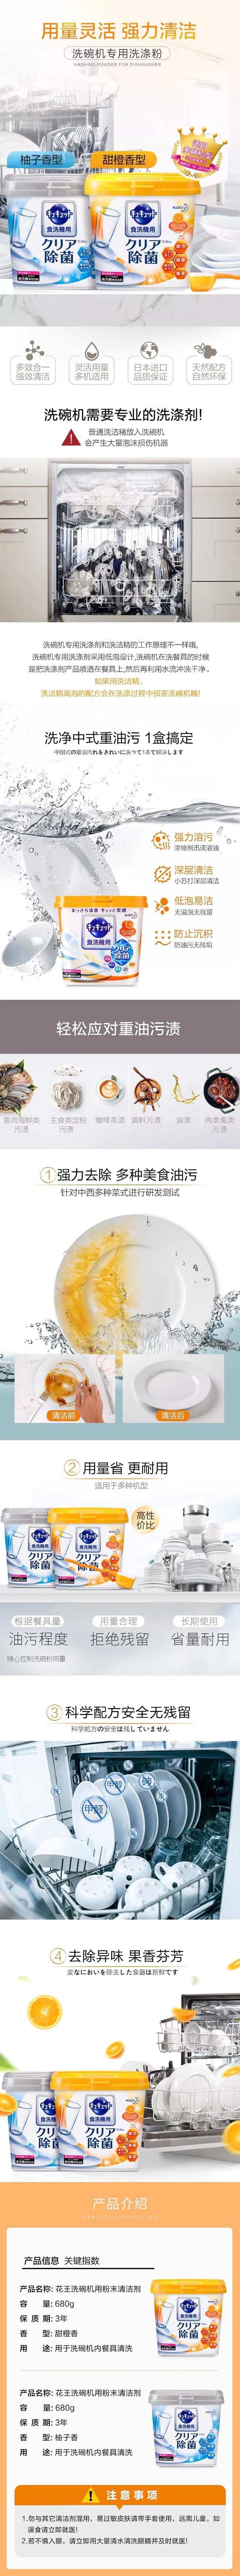 【日本直郵】KAO花王 洗碗機專用洗滌劑 檸檬酸清潔劑粉末盒裝 柚子香 680g